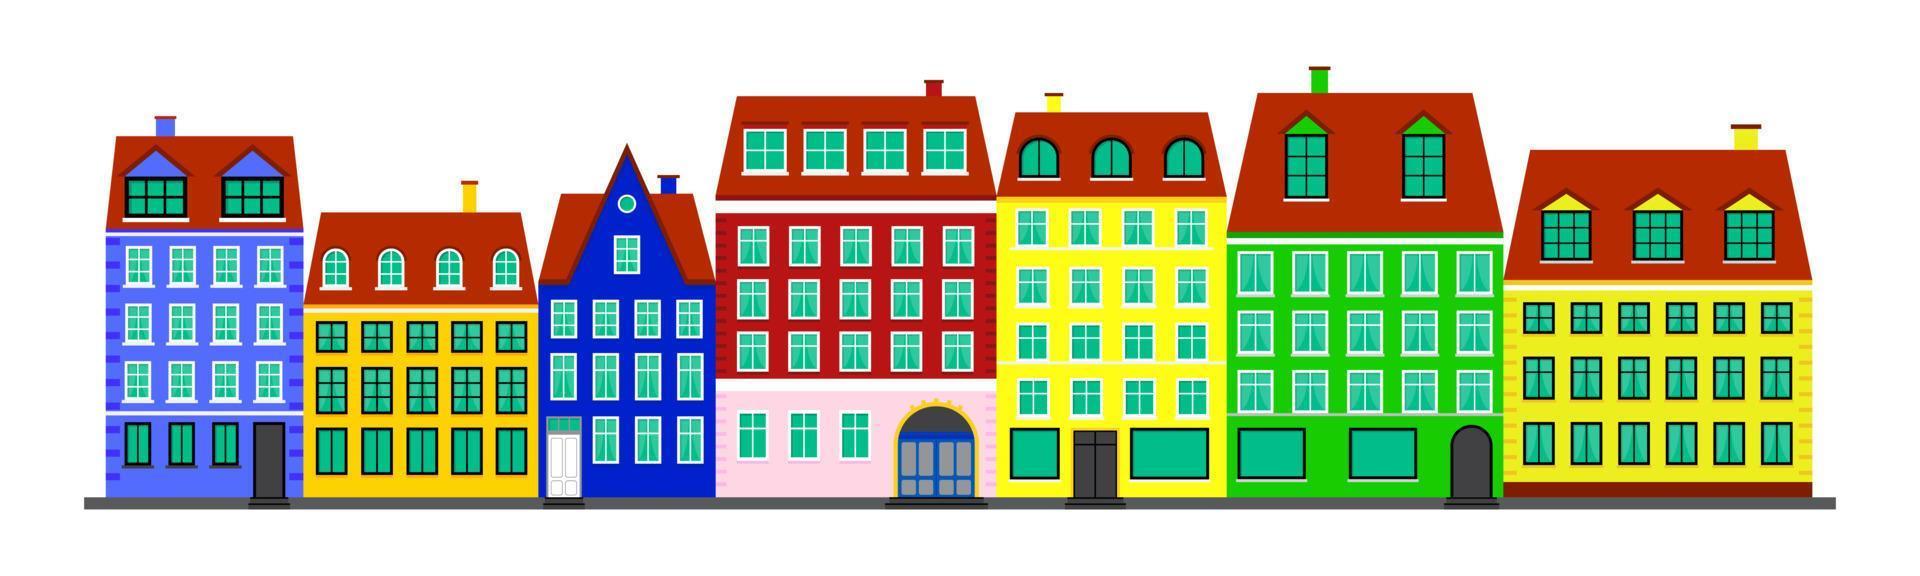 vida urbana. casas coloridas no estilo escandinavo. rua de casas escandinavas. paisagem com fachadas de edifícios. ilustração vetorial isolada no fundo branco vetor